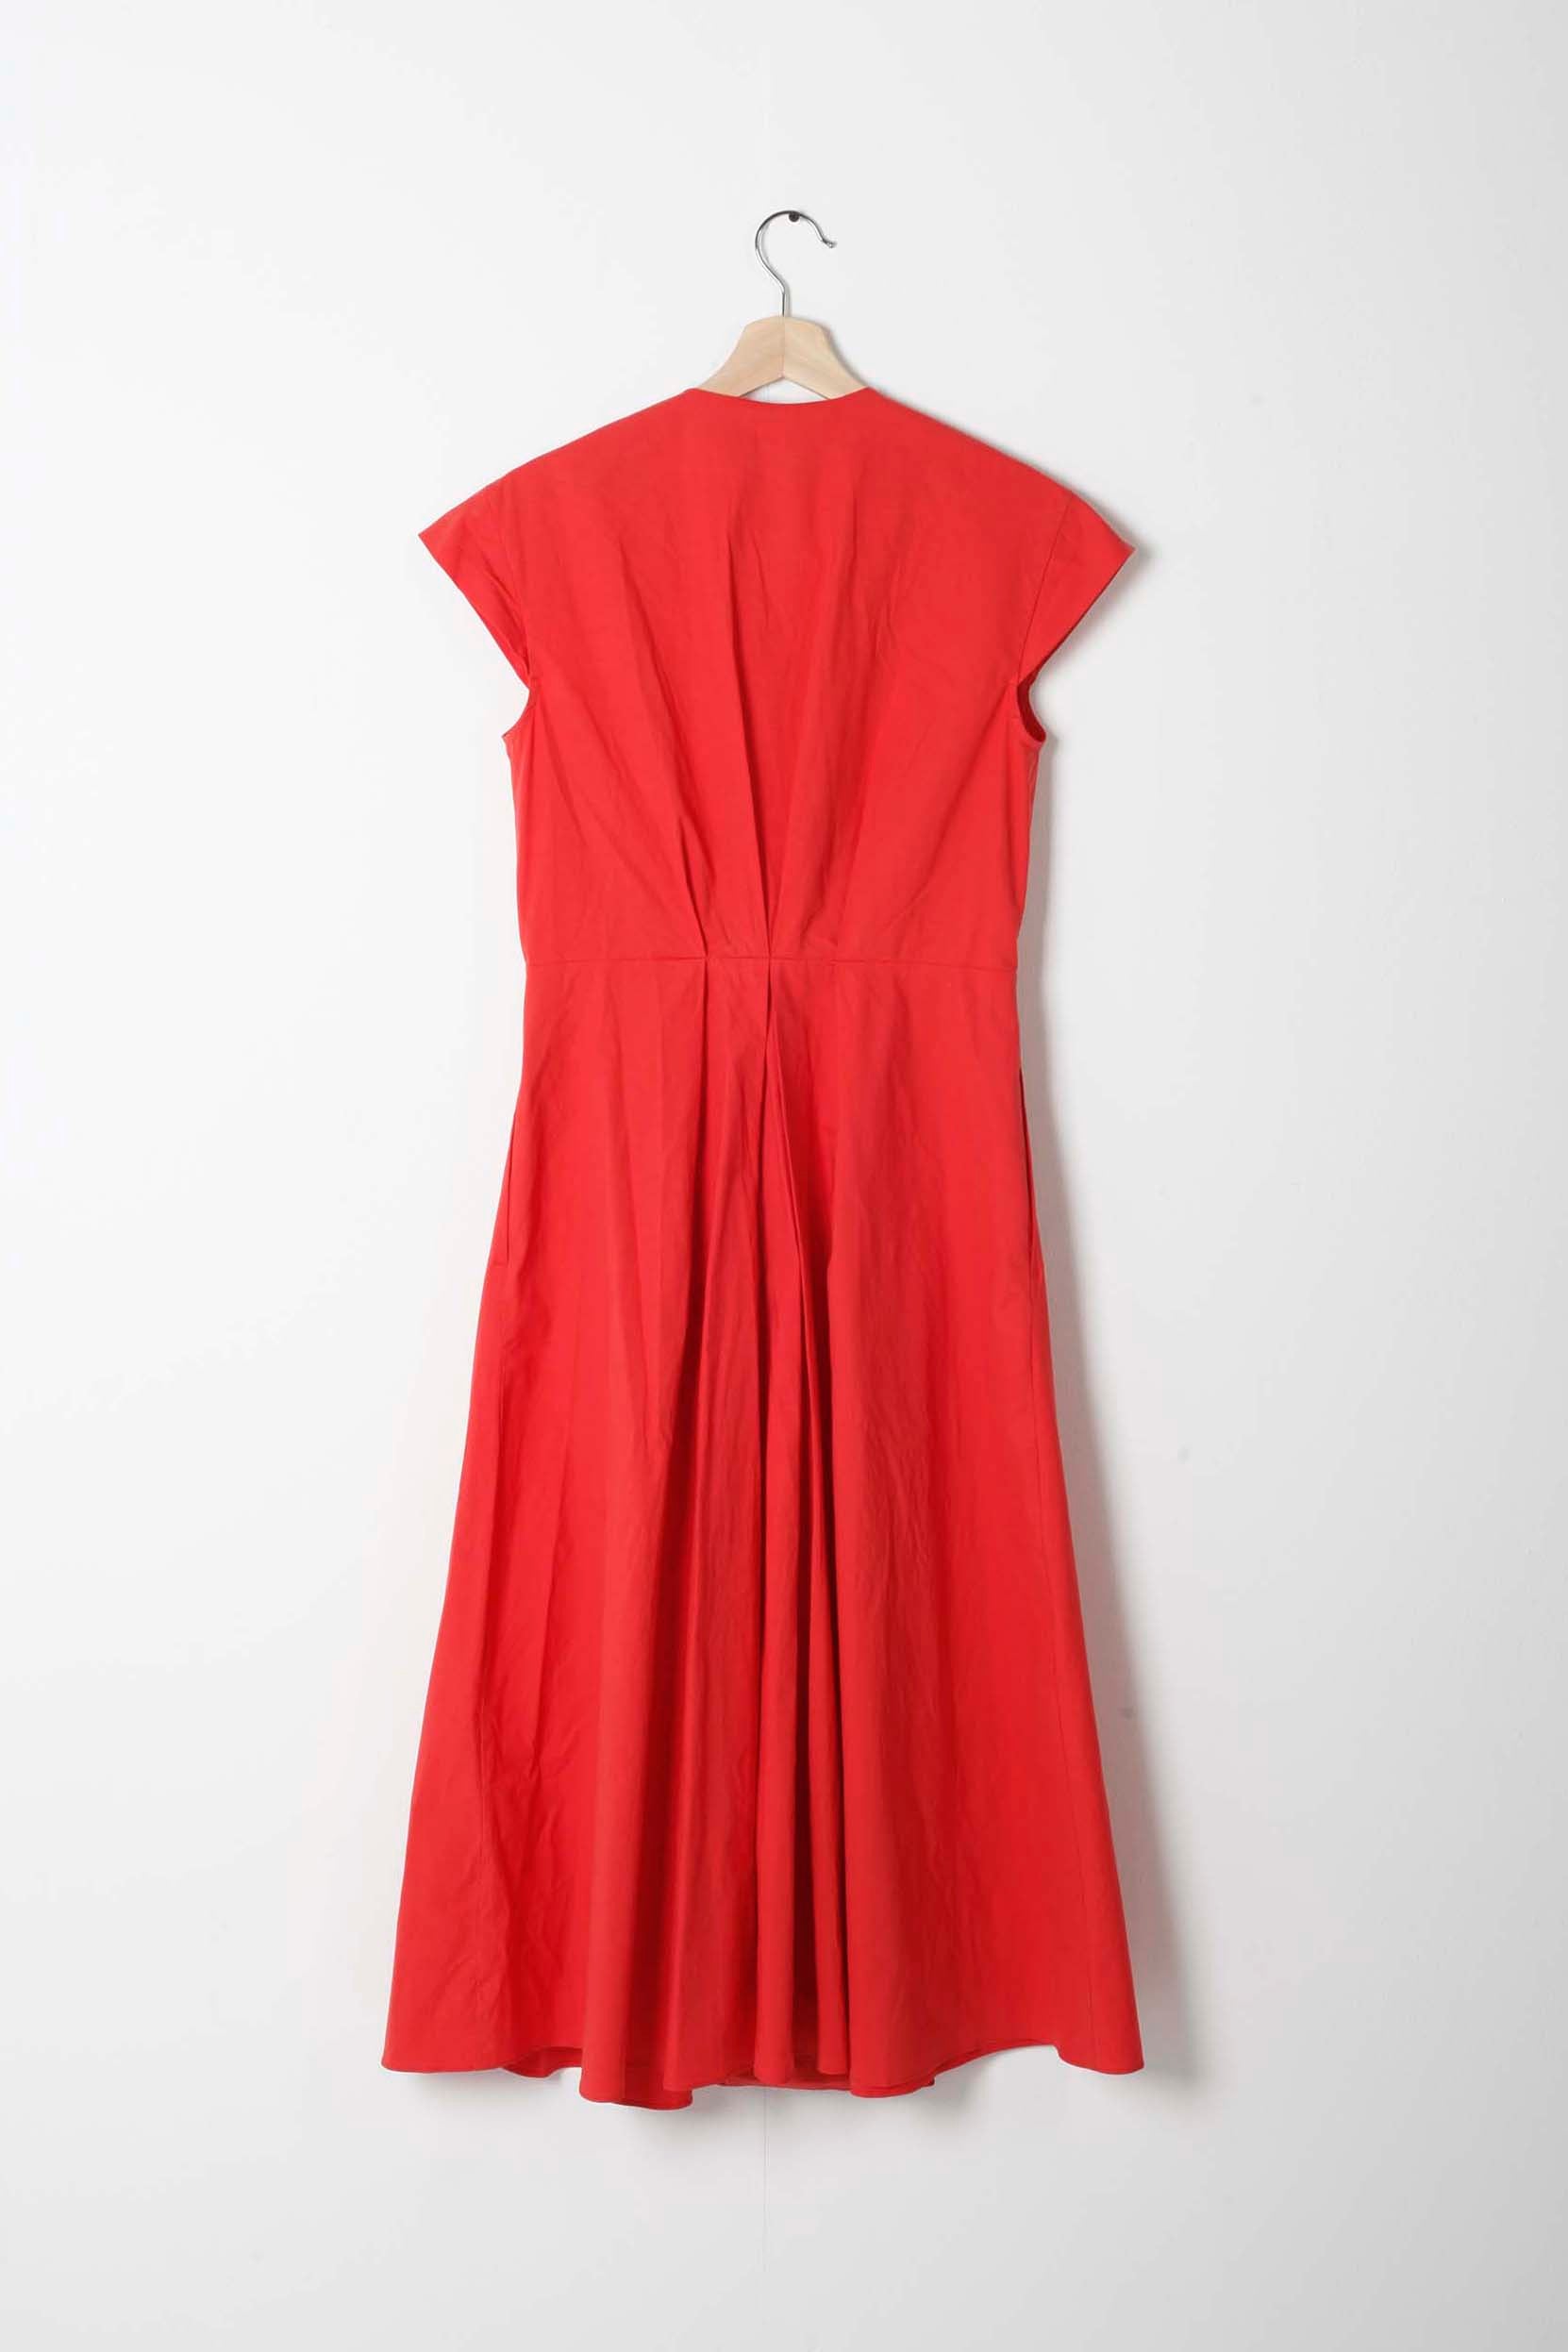 Red Sleeveless Summer Dress